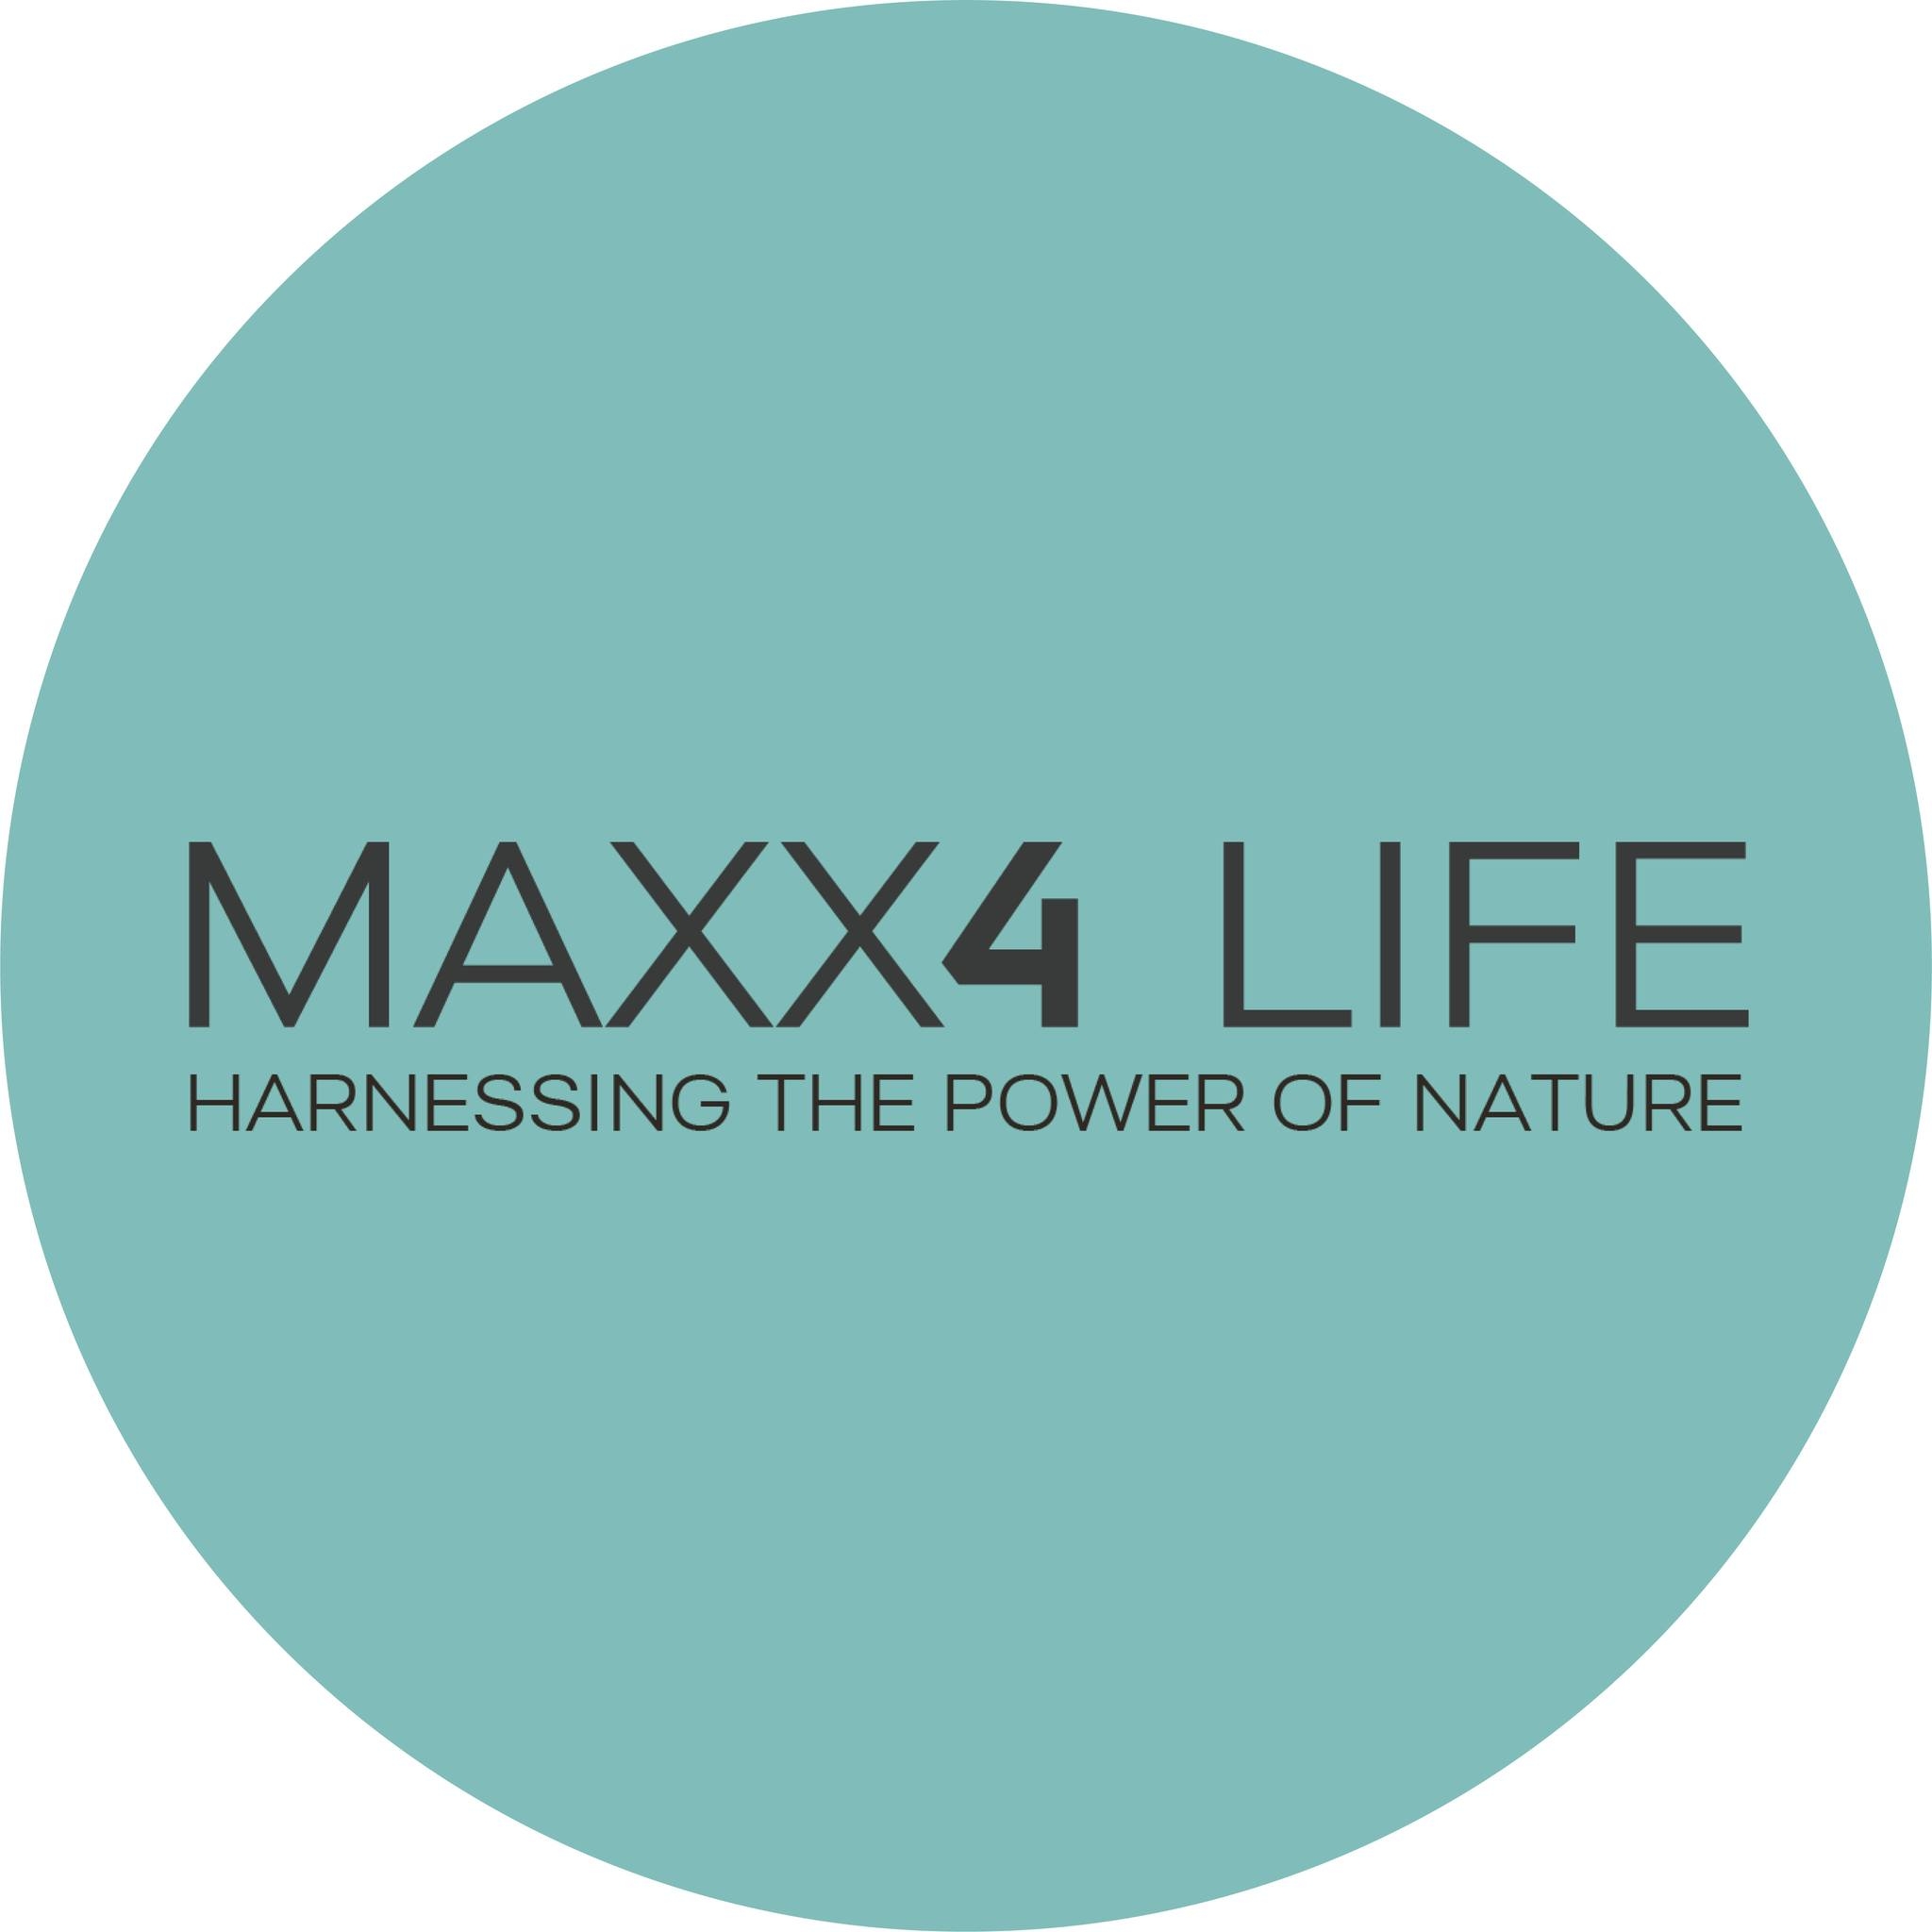 Maxx4 Life